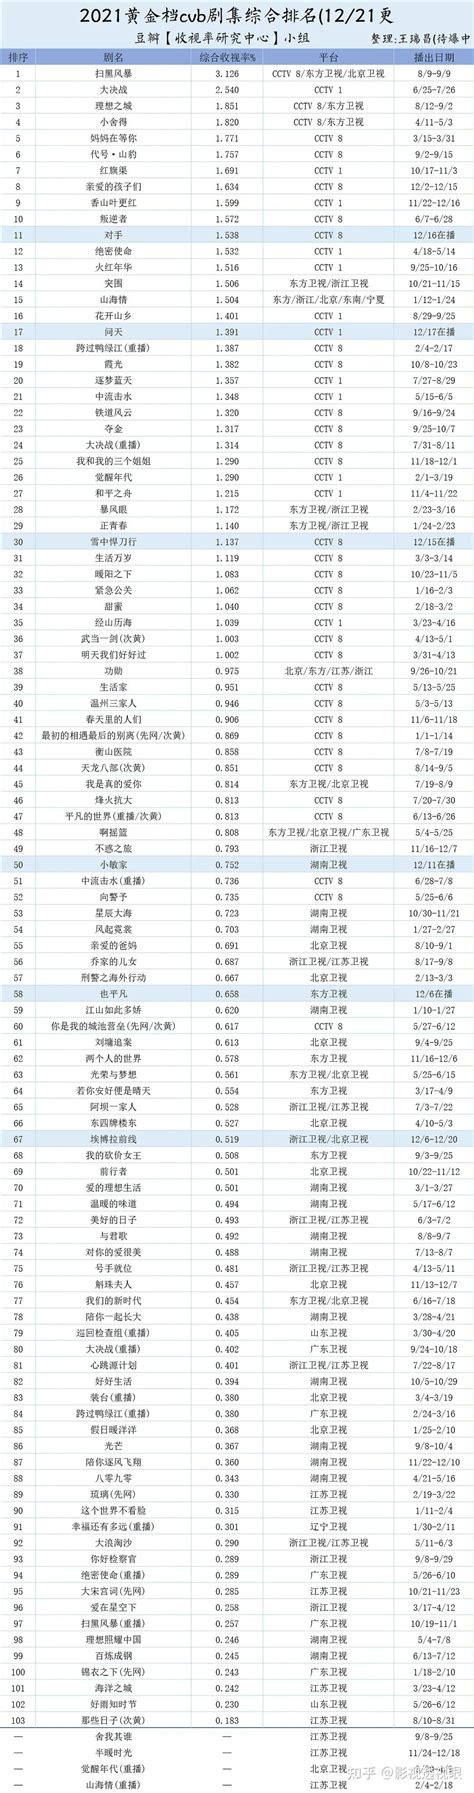 2019中国收视率排行榜_电视台收视率排行榜 全国电视台收视率排行榜发_中国排行网